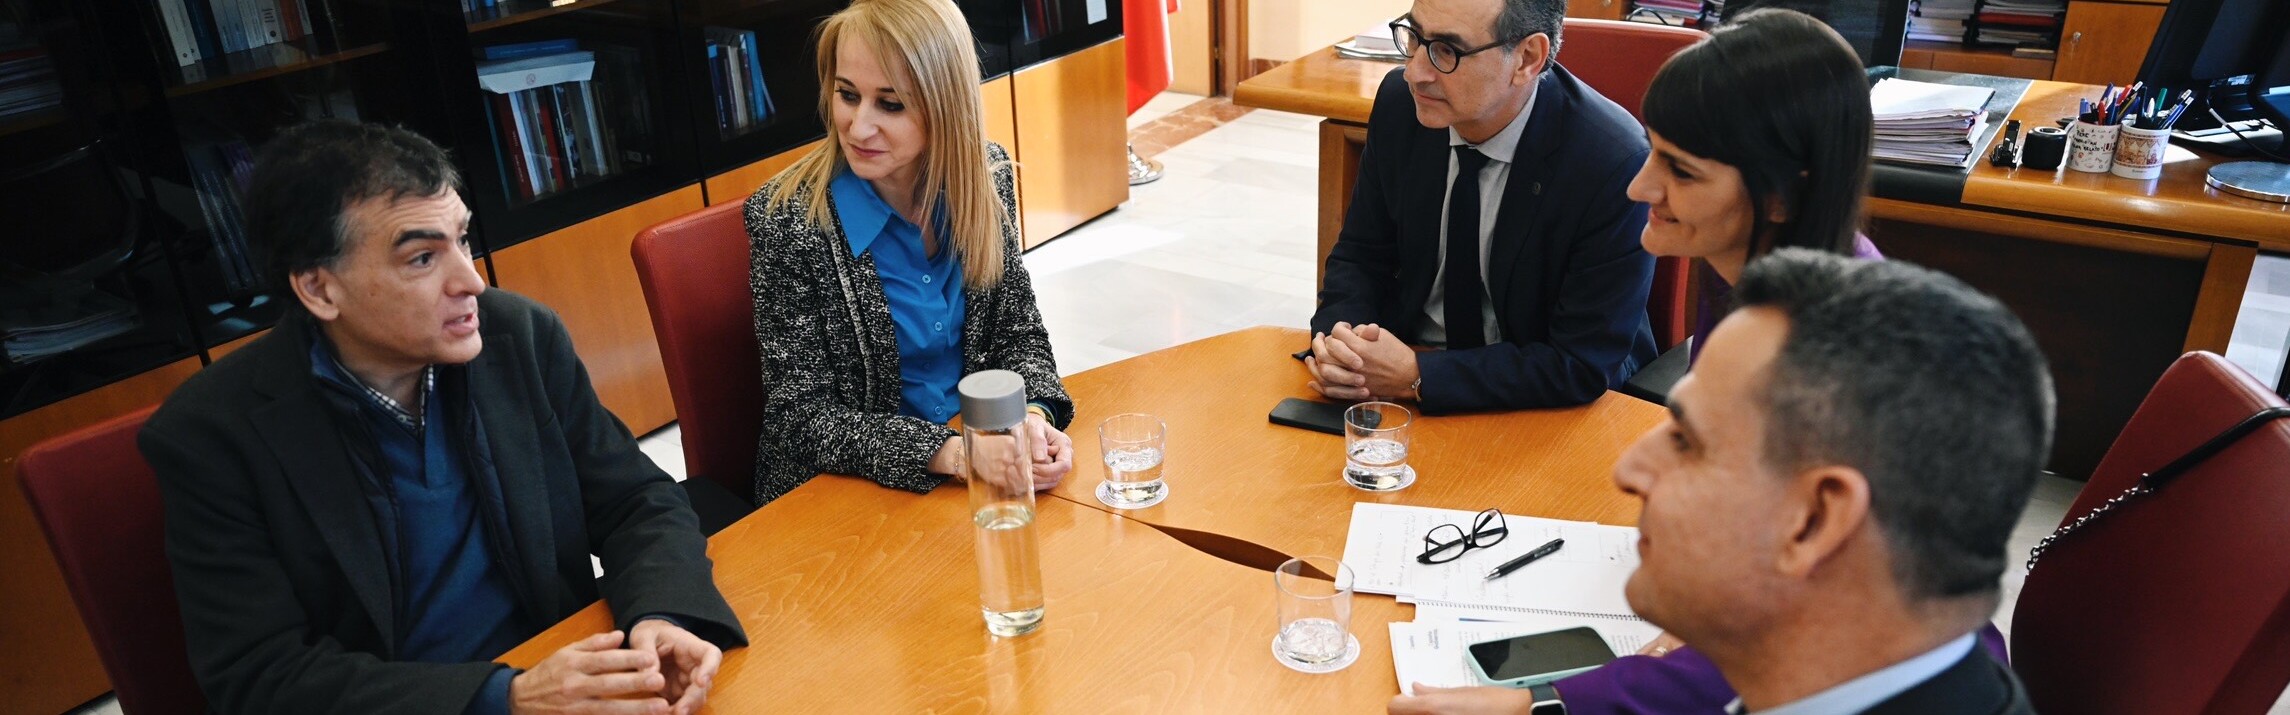 María González Veracruz anuncia en la UMU el apoyo del Gobierno para implantar un centro de excelencia en Ciberseguridad y Chips en la Región de Murcia